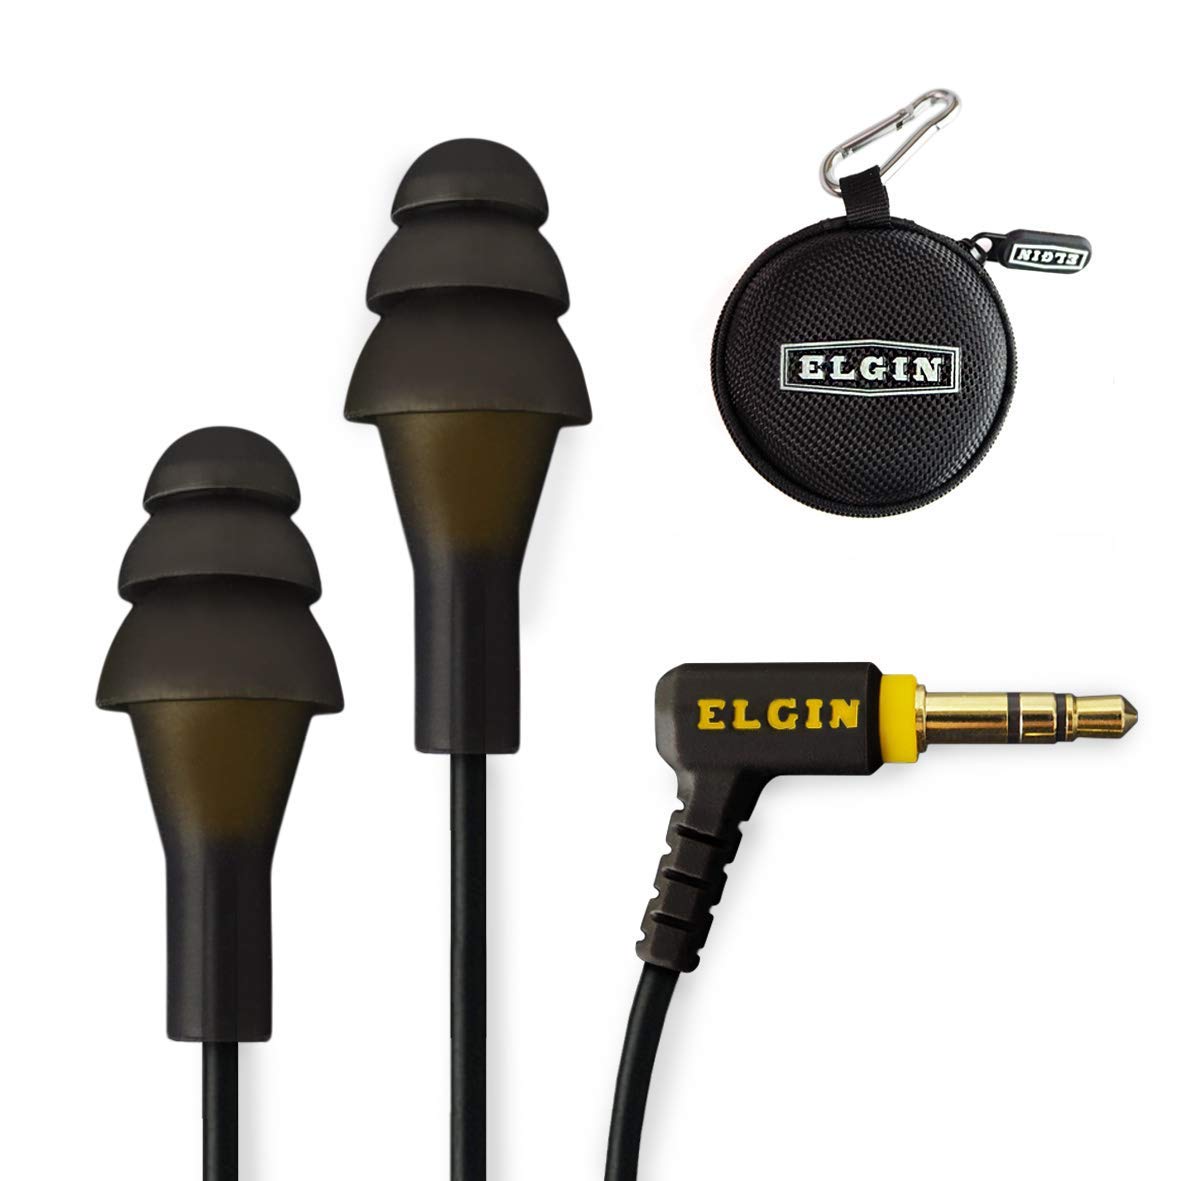 Elgin Fones de ouvido Ruckus Earplug | Fones de ouvido intra-auriculares de redução de ruído em conformidade com OSHA: Fones de ouvido com plugue de isolamento